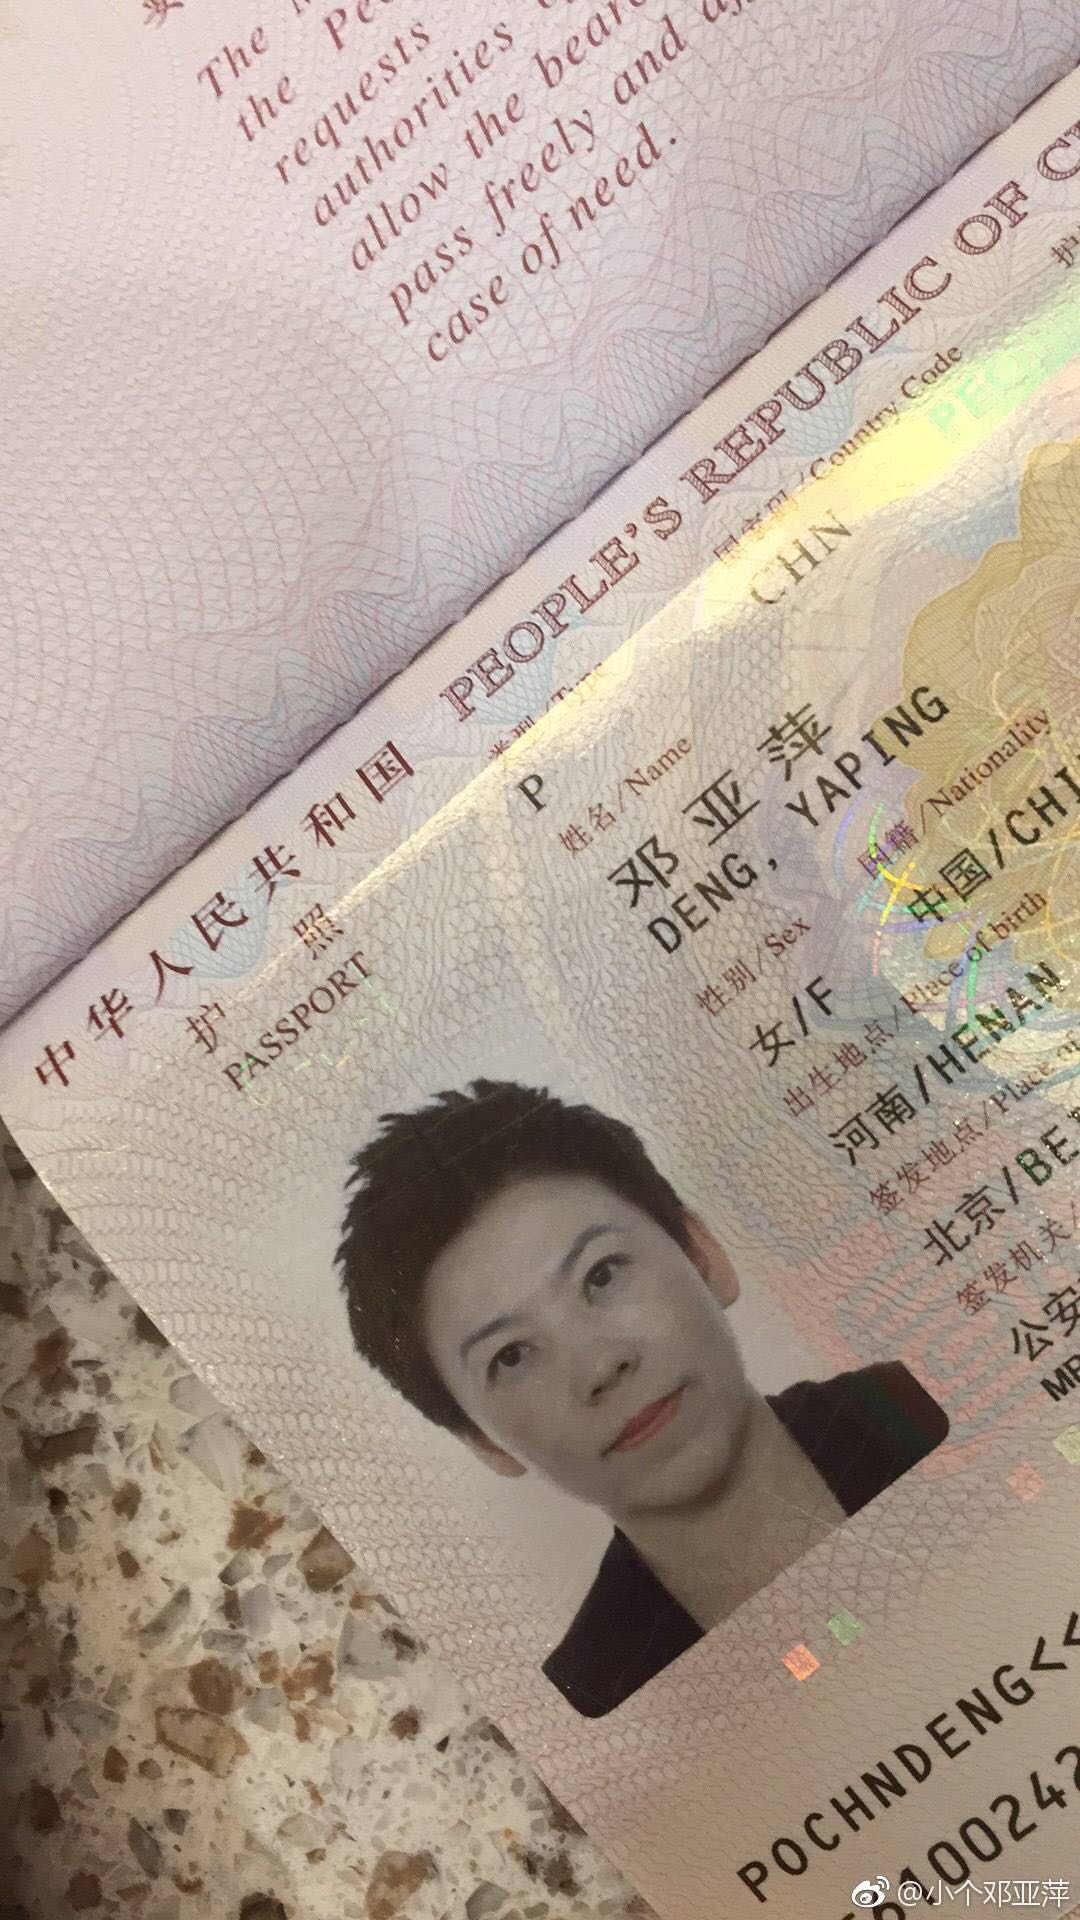 护照签发地点图片